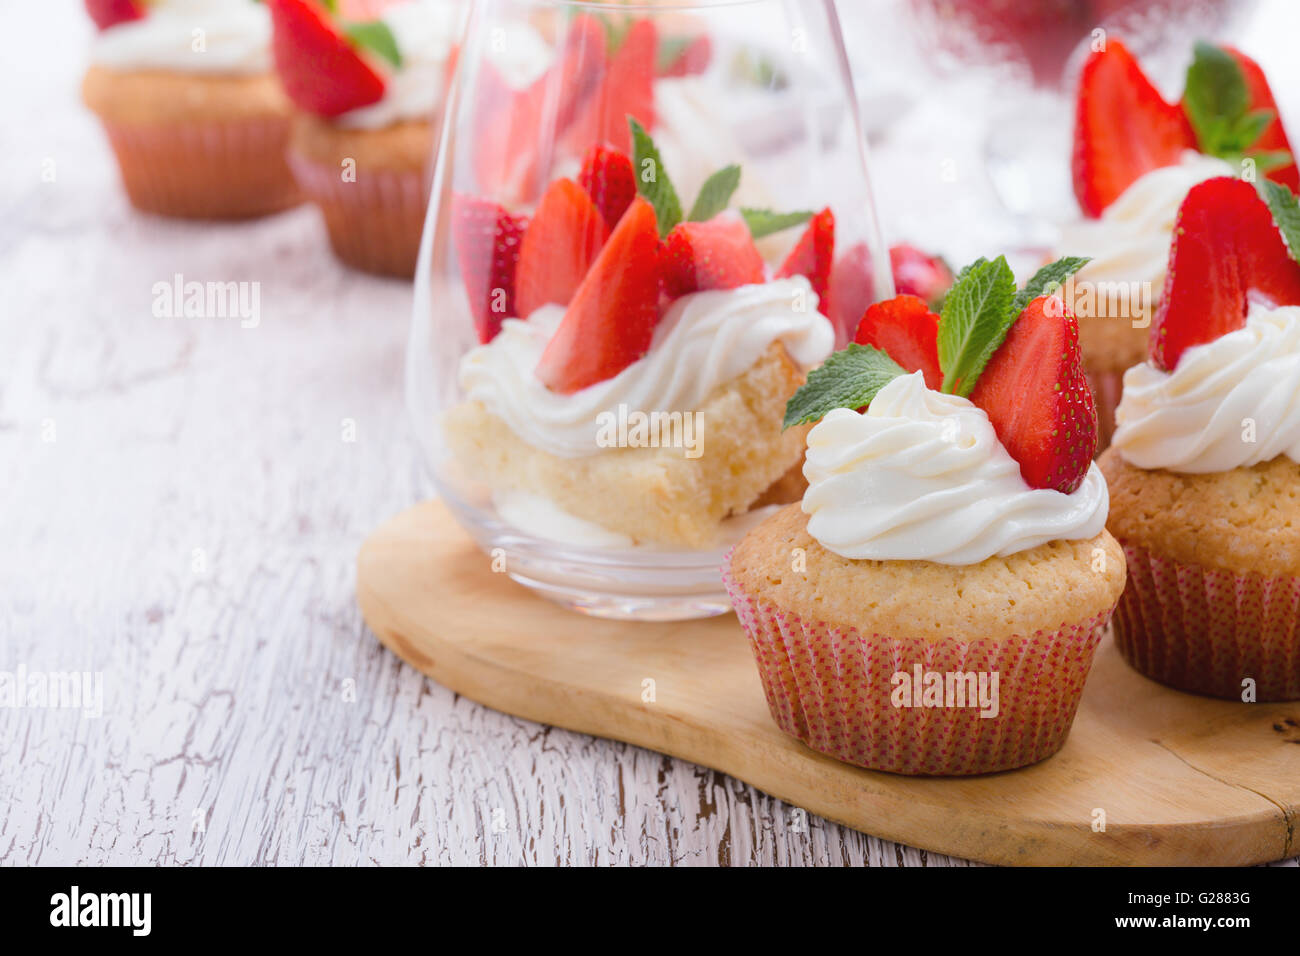 Cupcakes buttercream casero con fresas y menta fresca y esponja layer cake con fresas en un vaso de madera blanca Foto de stock